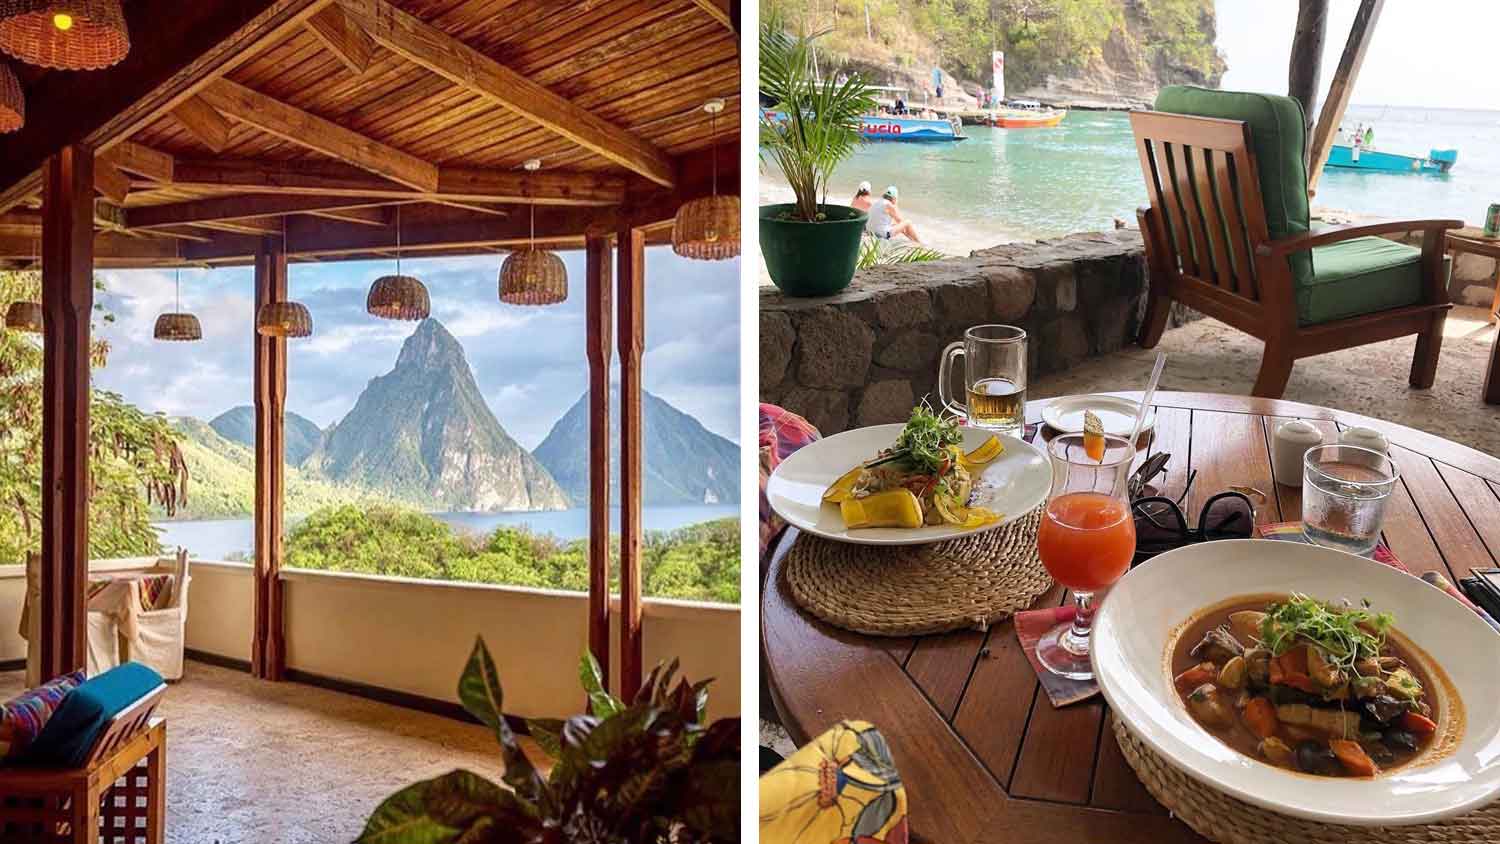 St. Lucia Luxury Resort Restaurant Goes Completely Vegan